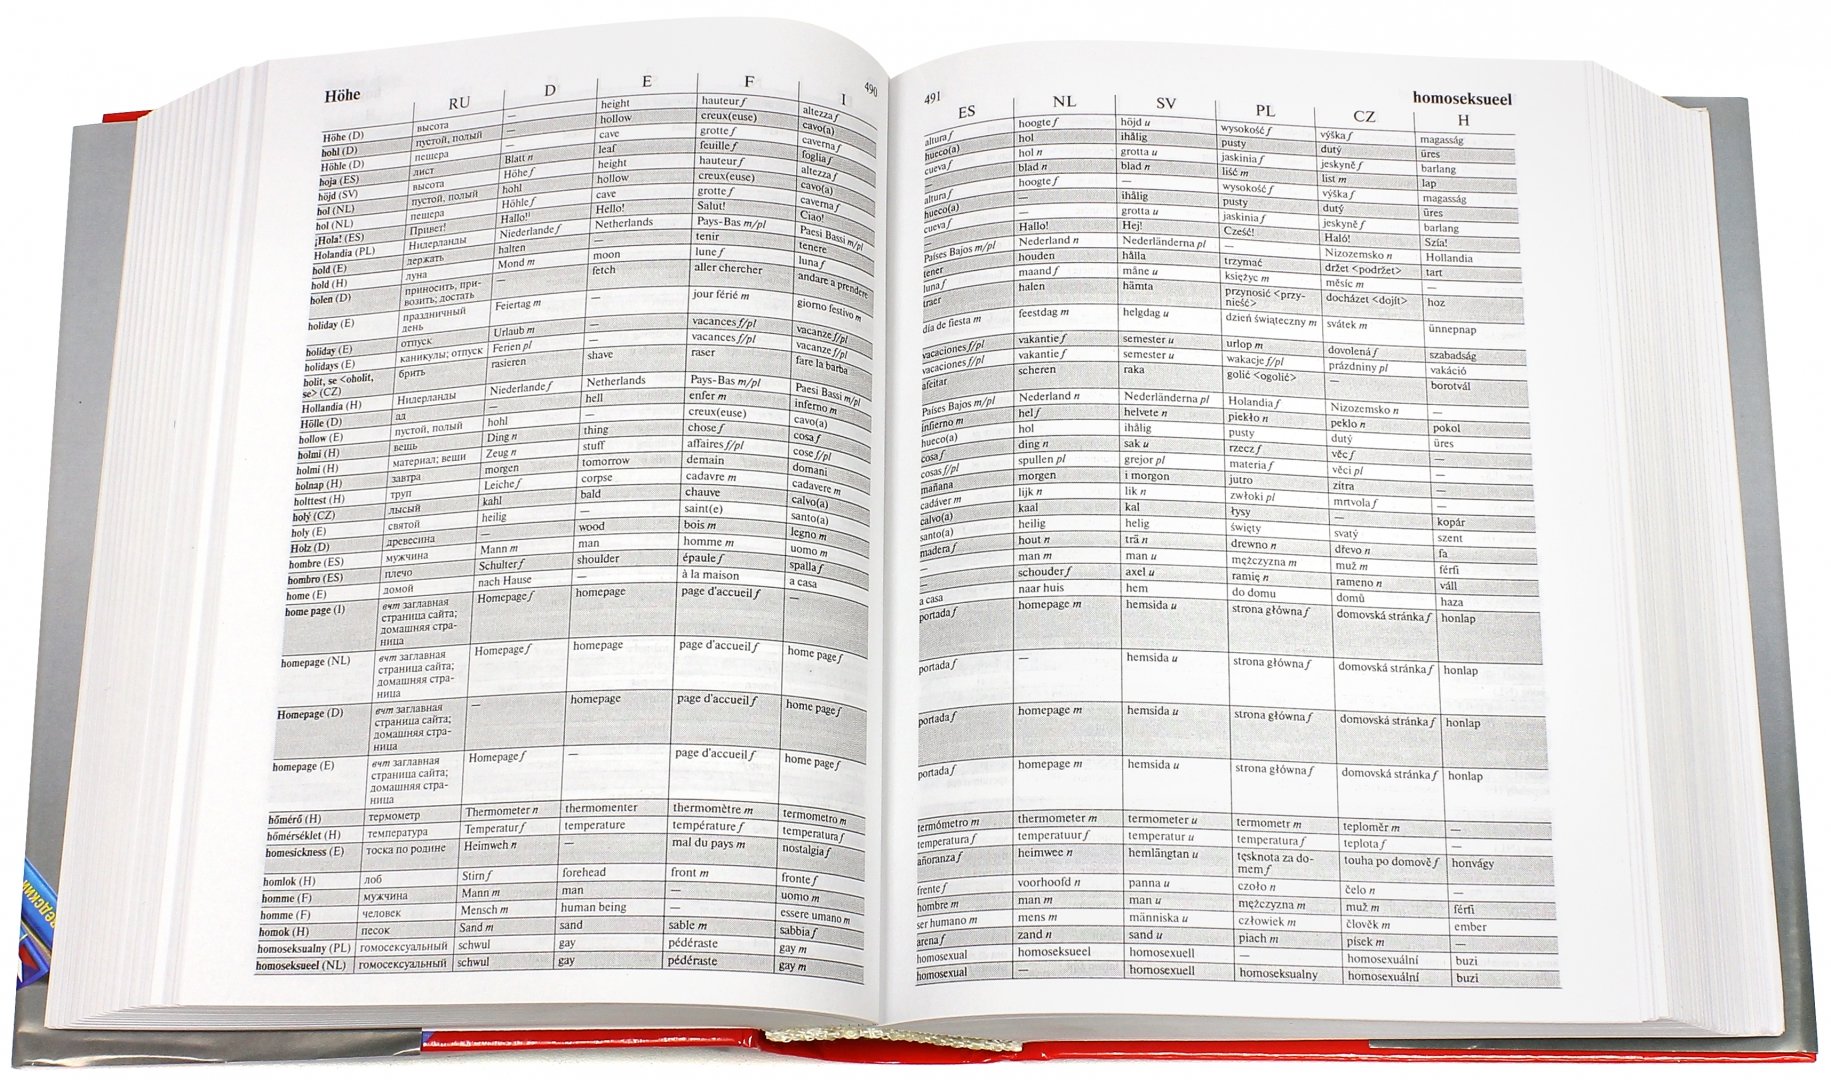 Иллюстрация 1 из 5 для Большой словарь на 11 языках | Лабиринт - книги. Источник: Лабиринт